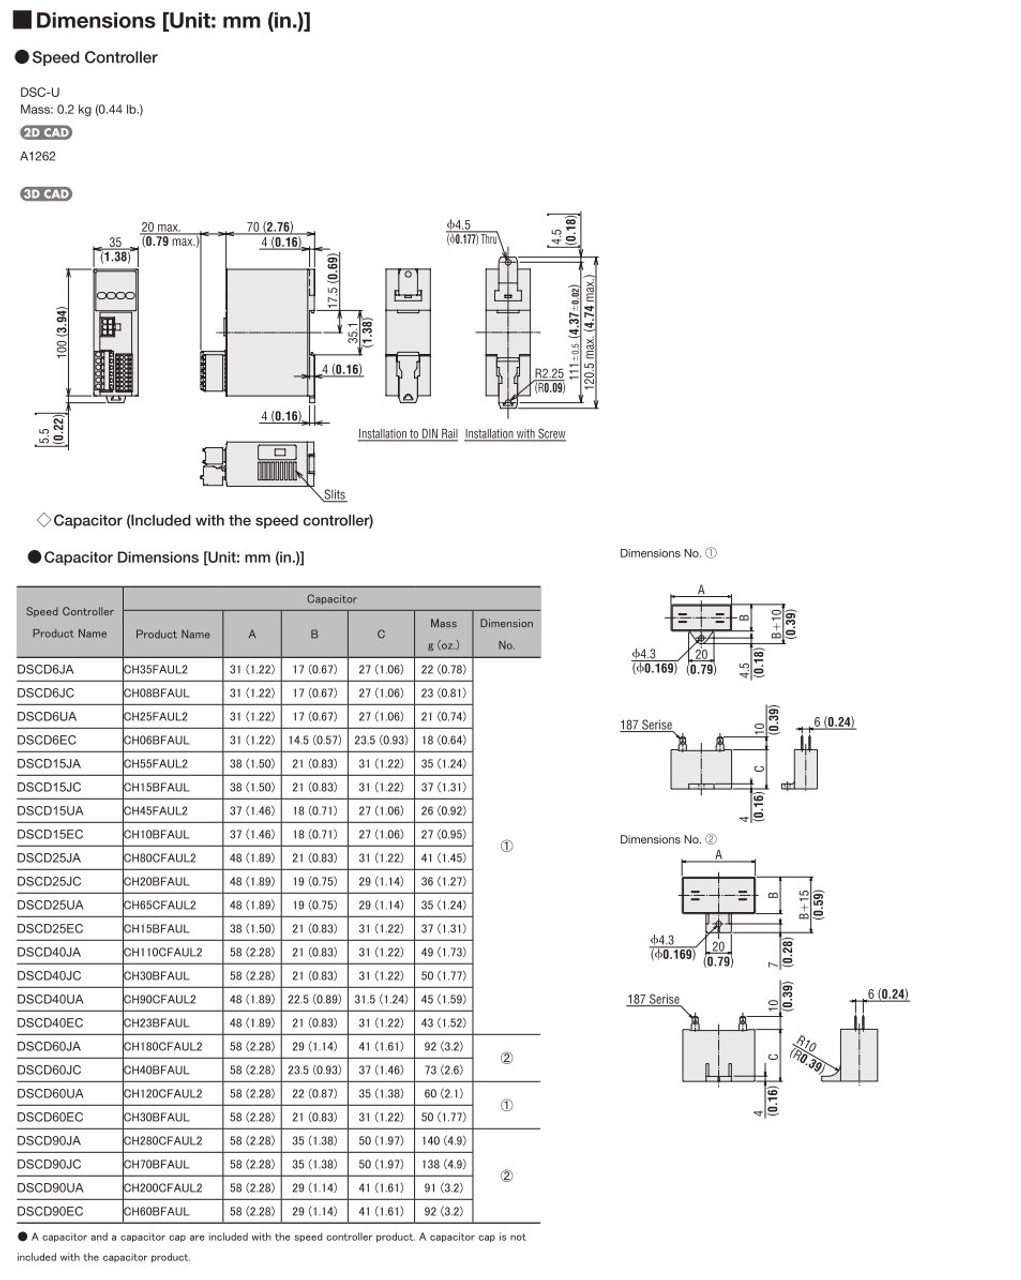 SCM315EC-36A / DSCD15EC - Dimensions